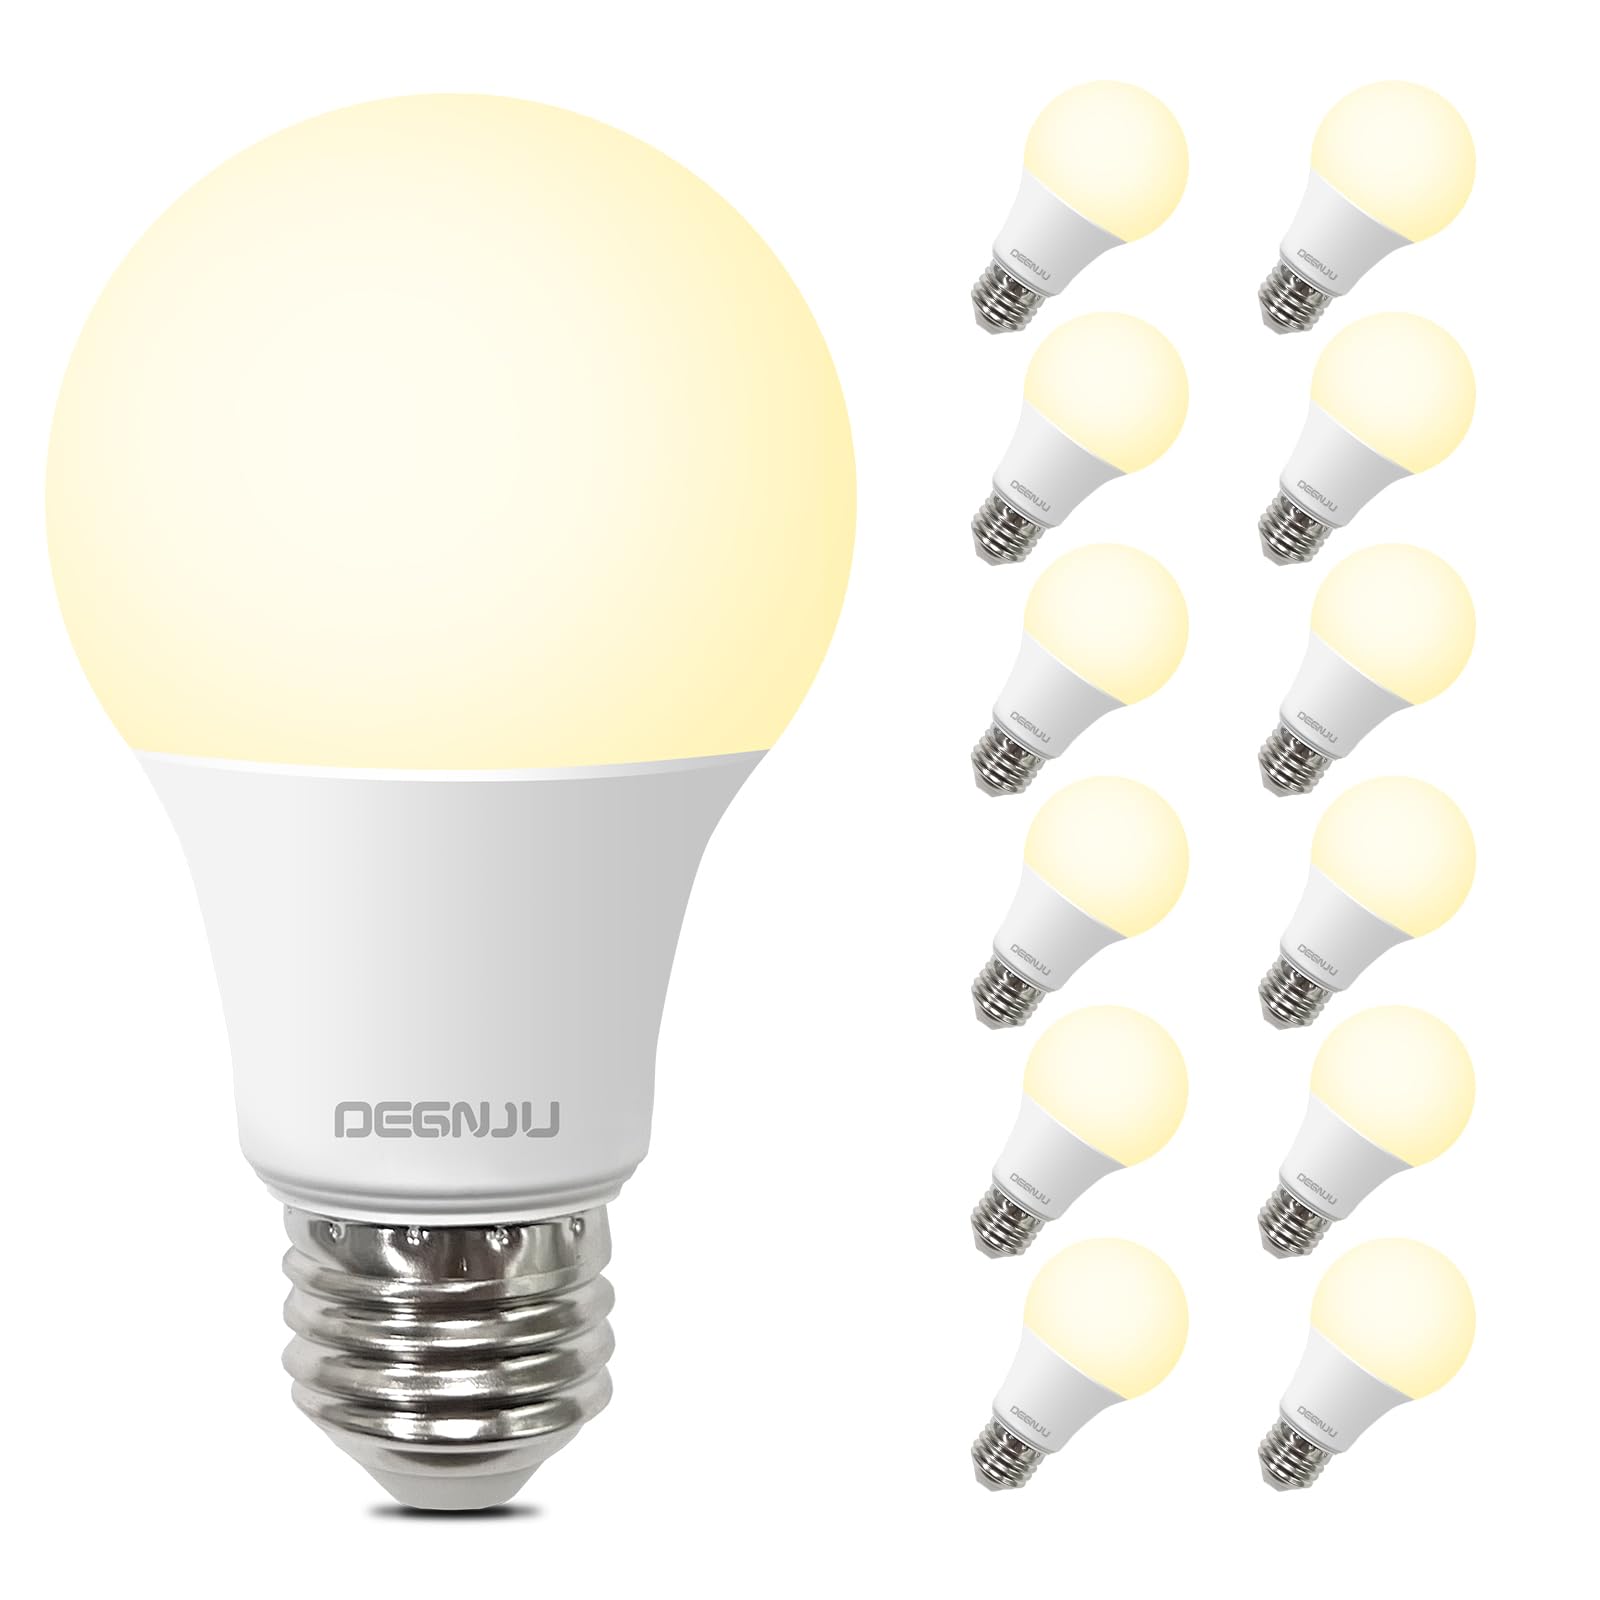 DEGNJU A19 LED Light Bulbs, 60 Watt Equivalent LED Bulbs, Soft White 2700K, 800 Lumens, E26 Standard Base, Non-Dimmable, 8.5W Warm White LED Bulbs for Bedroom Living Room, UL Listed, 12 Pack